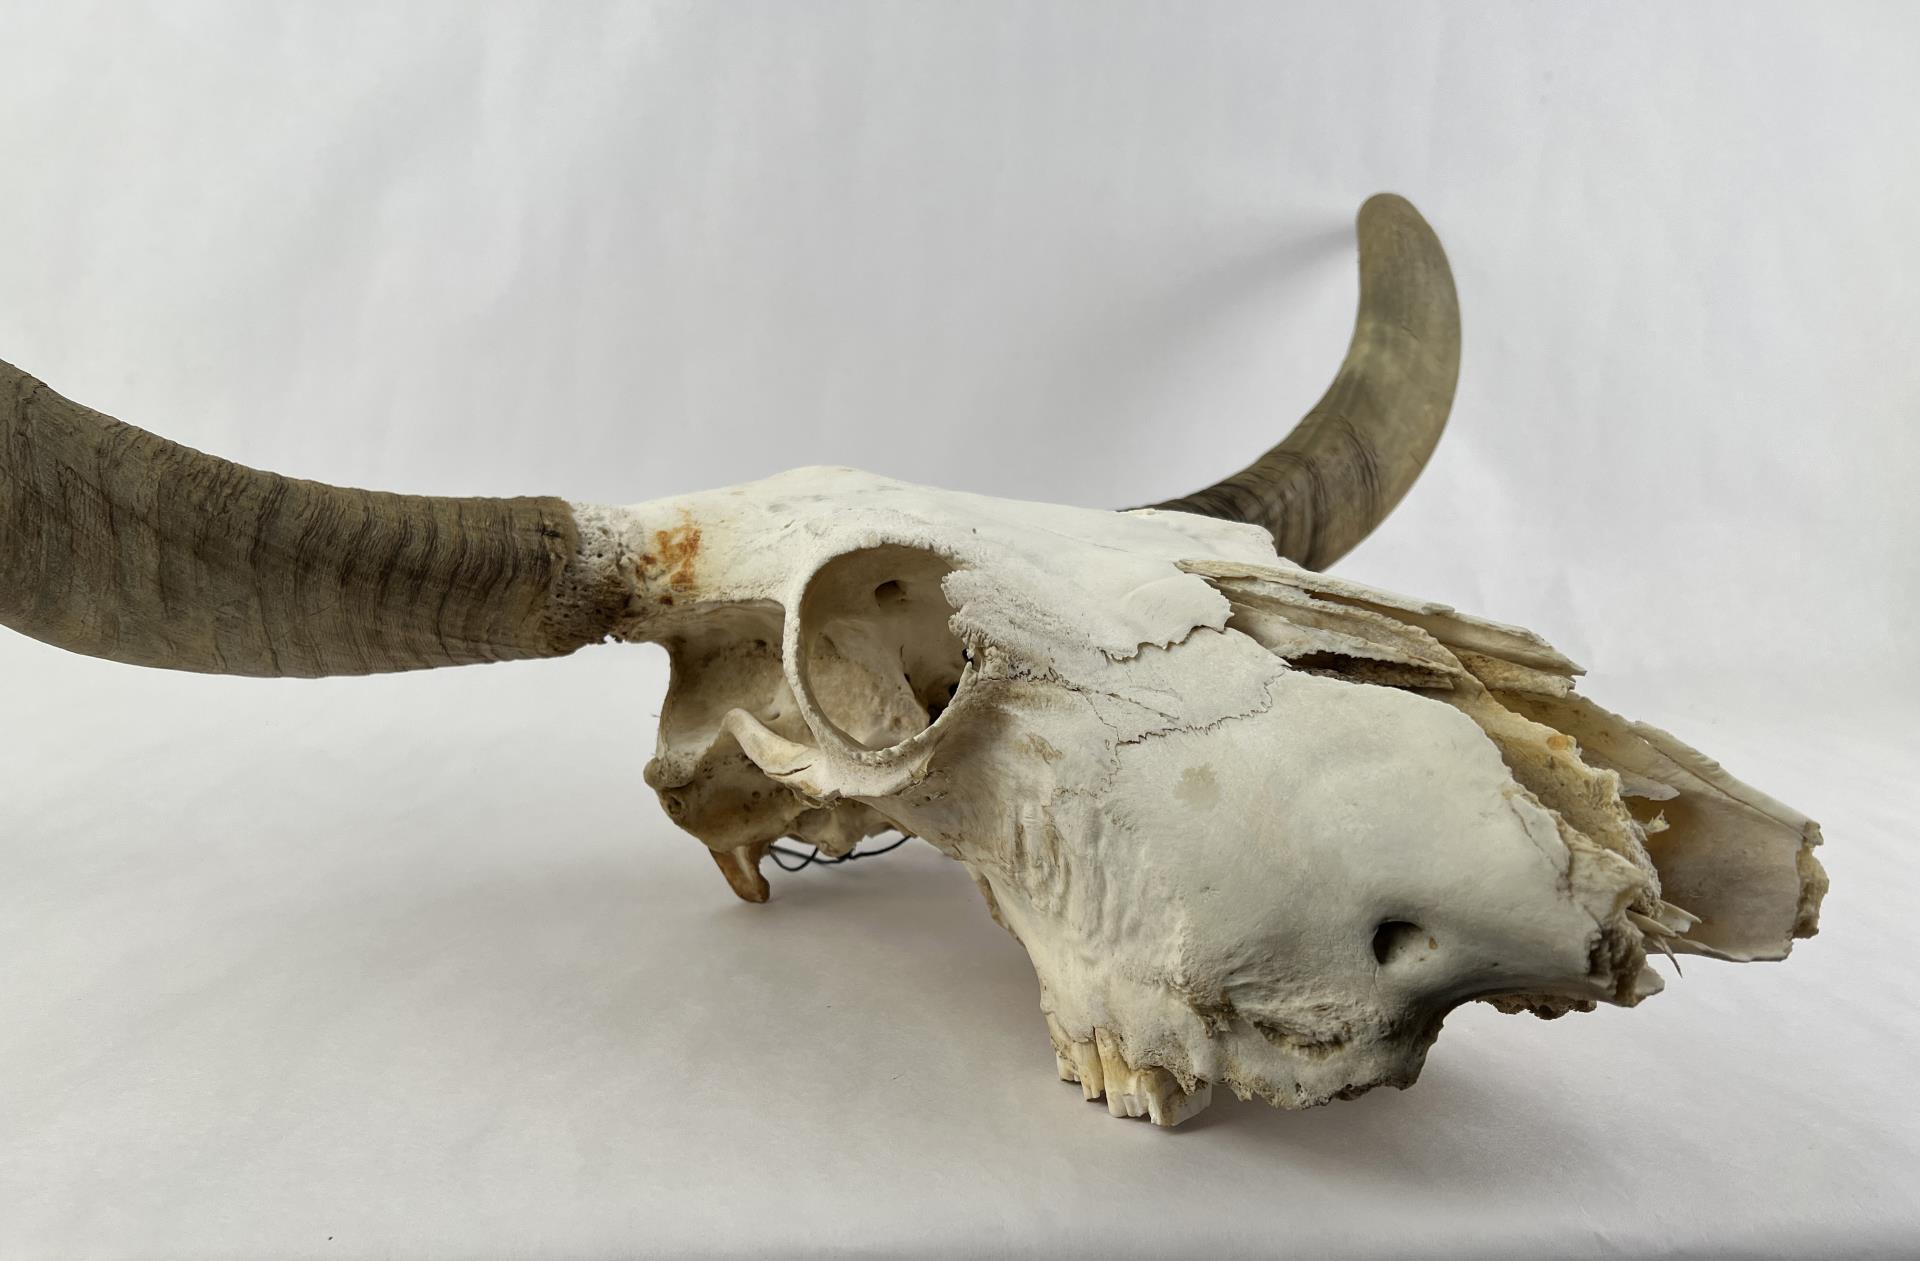 Texas Long Horn Steer Skull